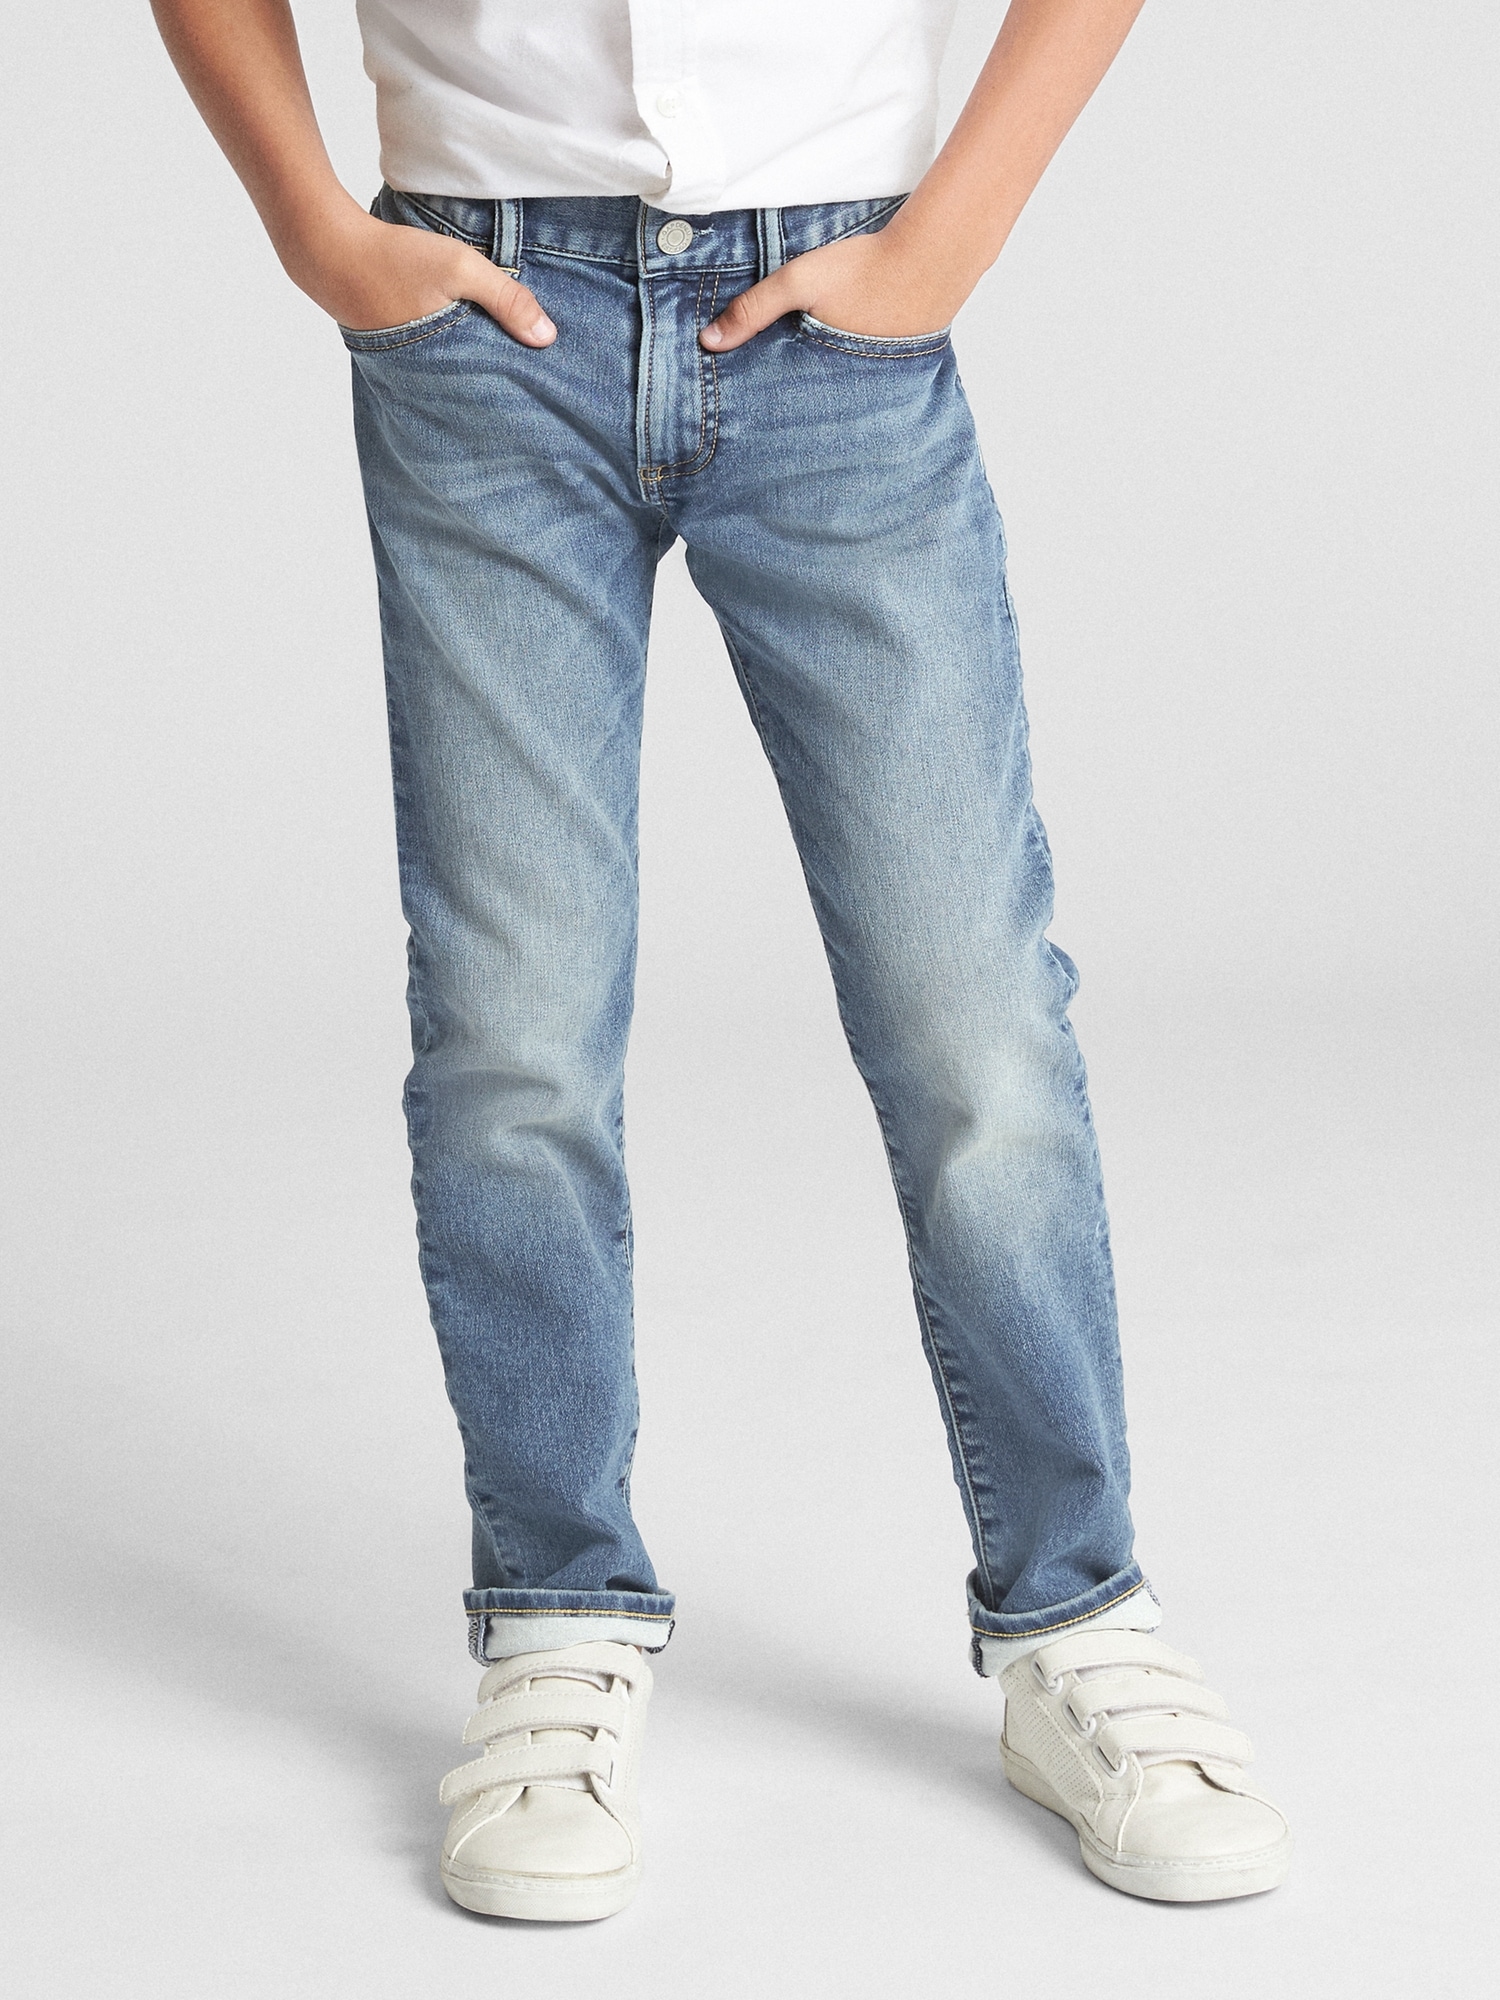 Kids Slim Jeans With Stretch | Gap